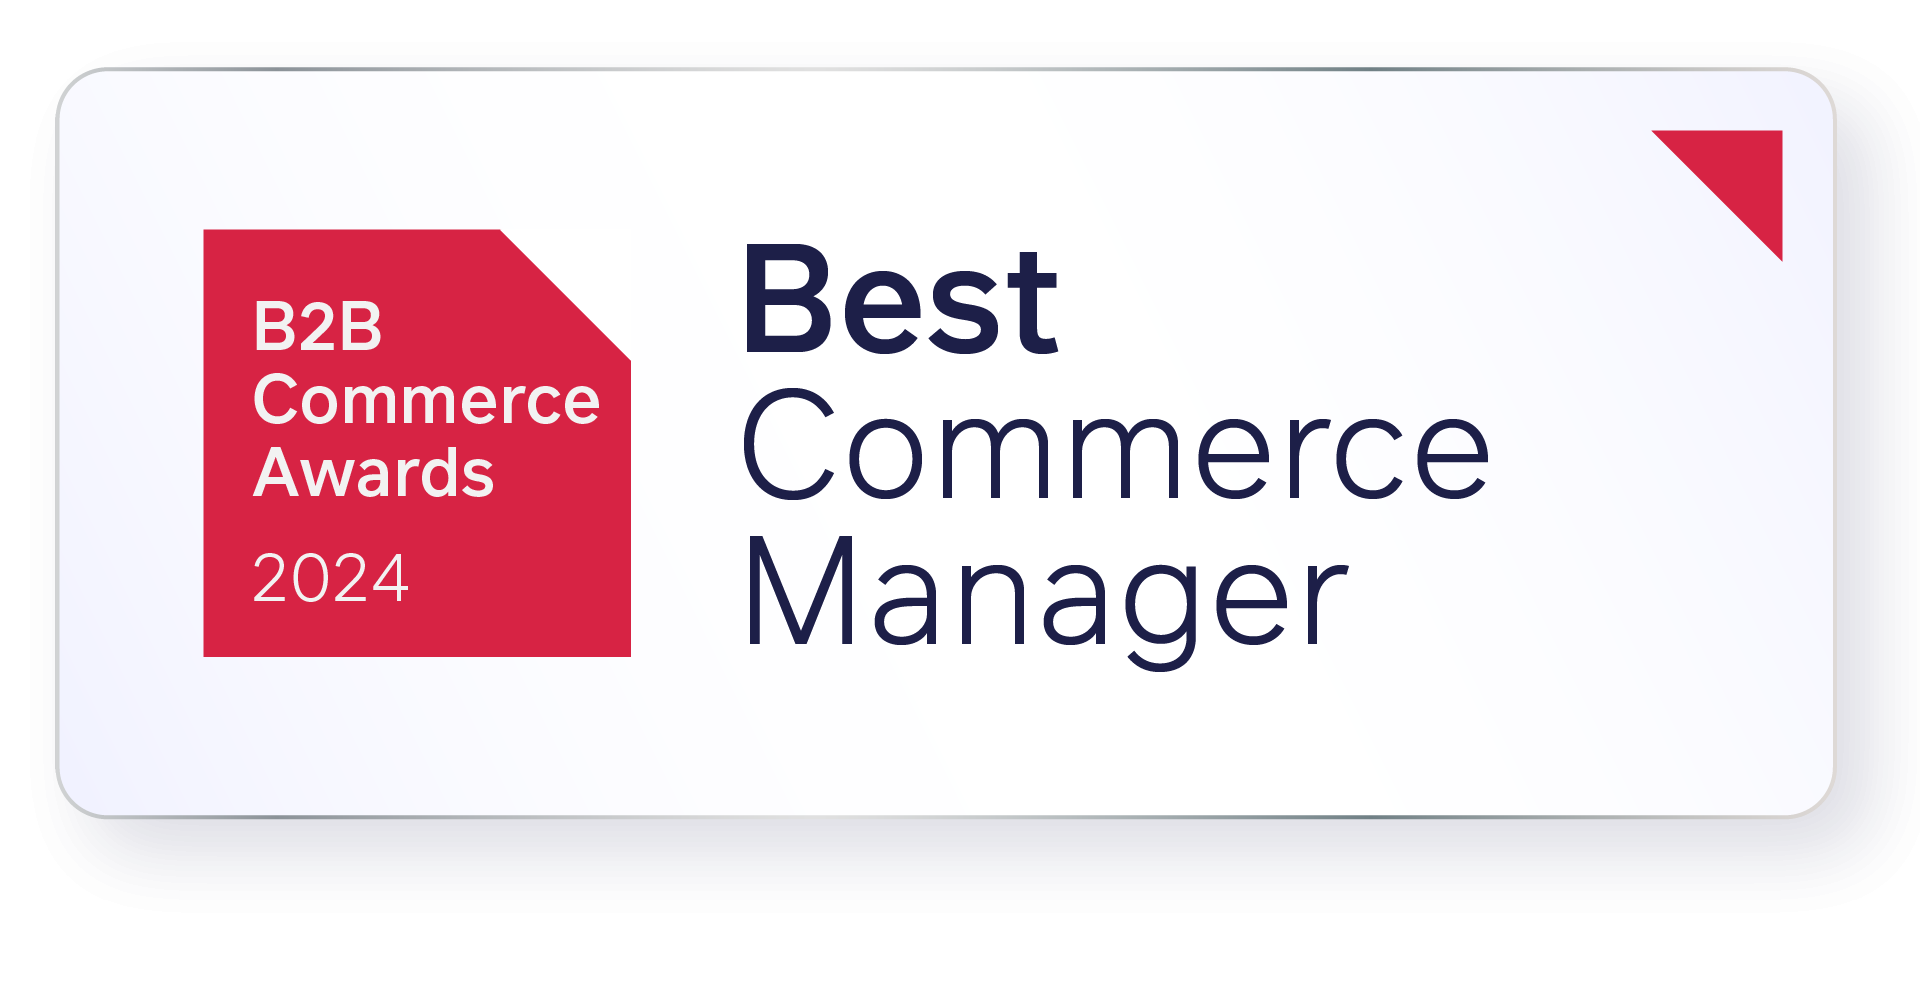 e-commerce awards best commerce manager